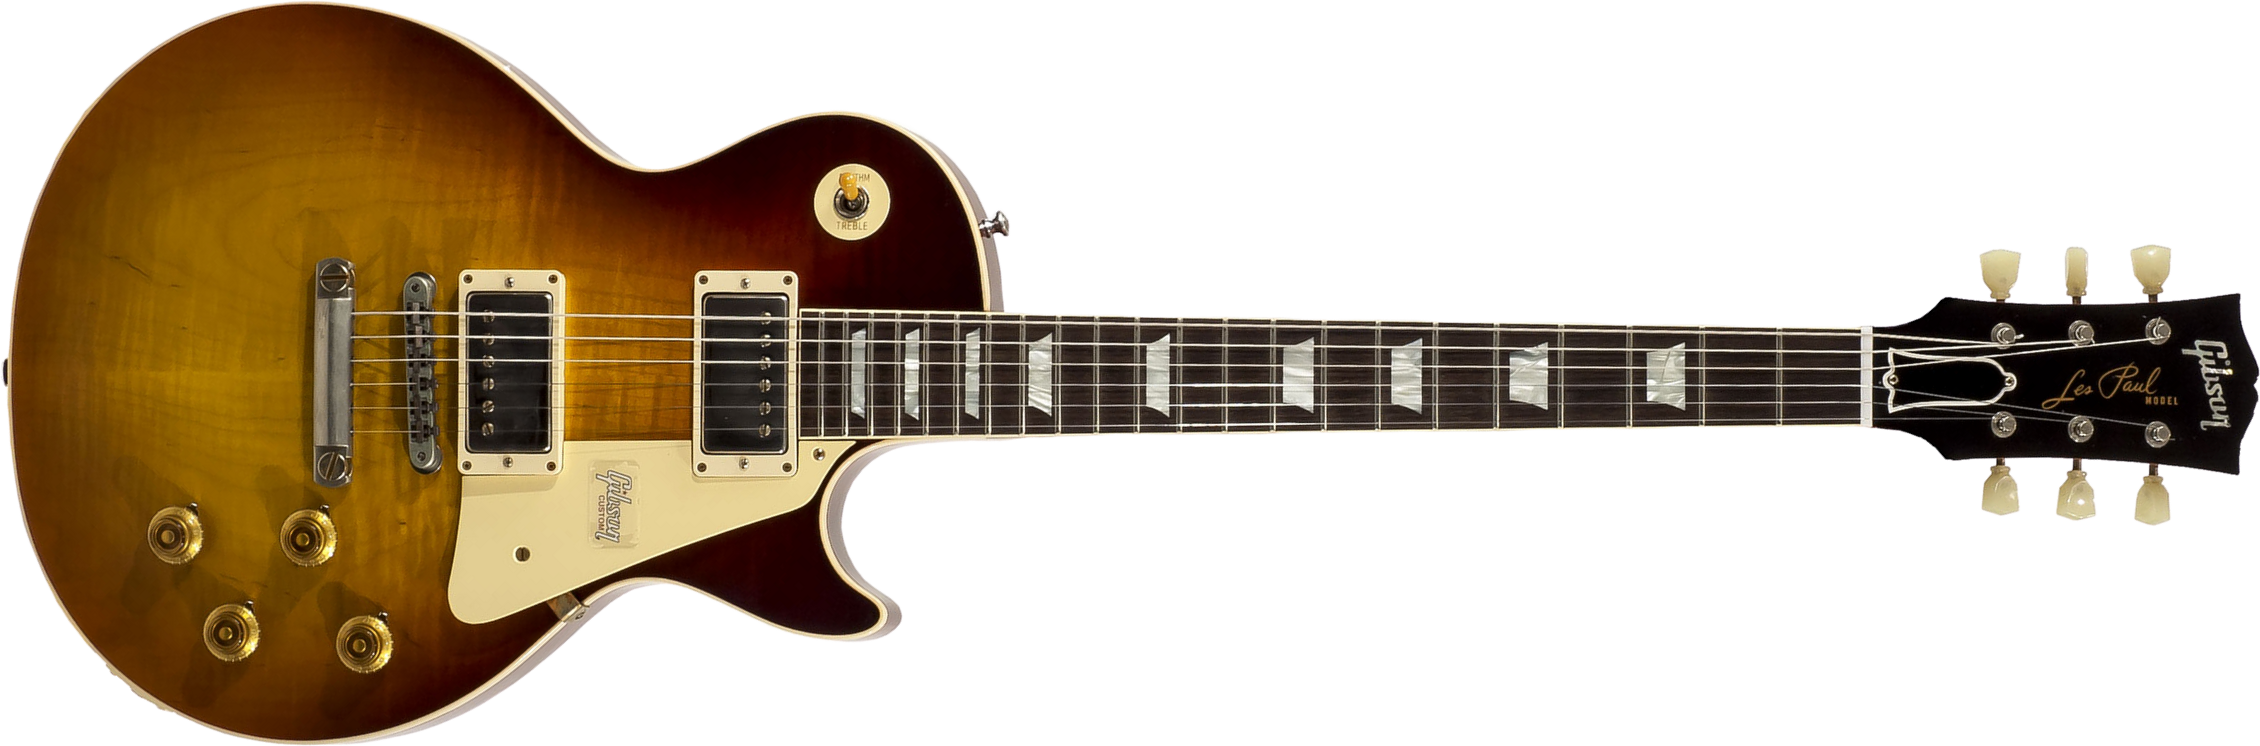 Gibson Custom Shop Les Paul Standard 1959 2h Ht Rw - Vos Dark Bourbon Fade - Guitare Électrique Single Cut - Main picture